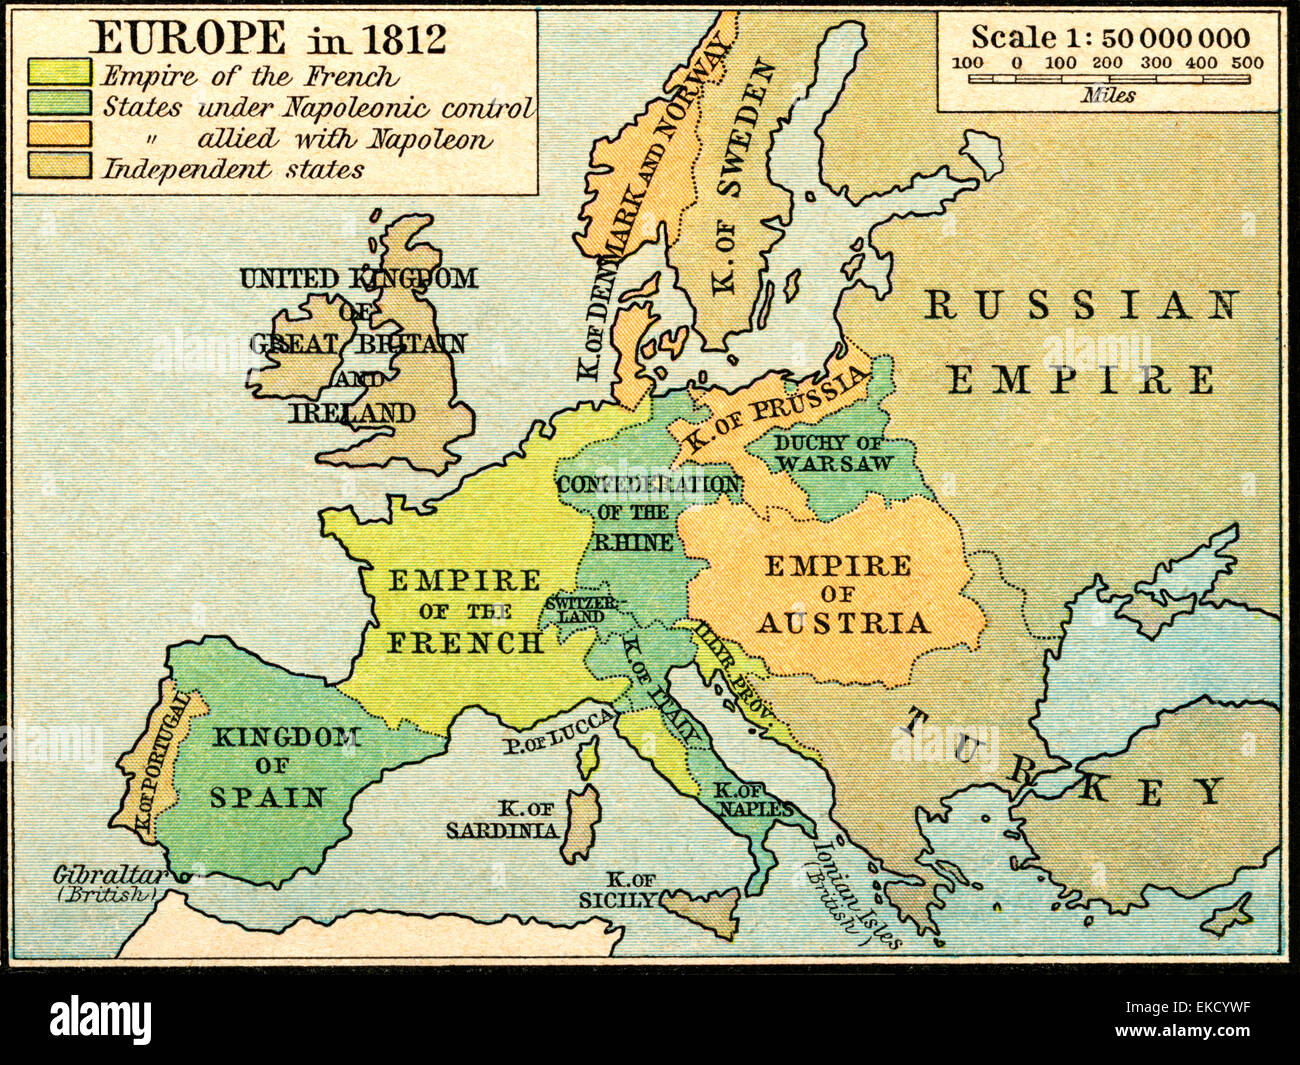 mapa europa napoleonica 1812 Mappa Di Europa Nel 1812 Foto Stock Alamy mapa europa napoleonica 1812